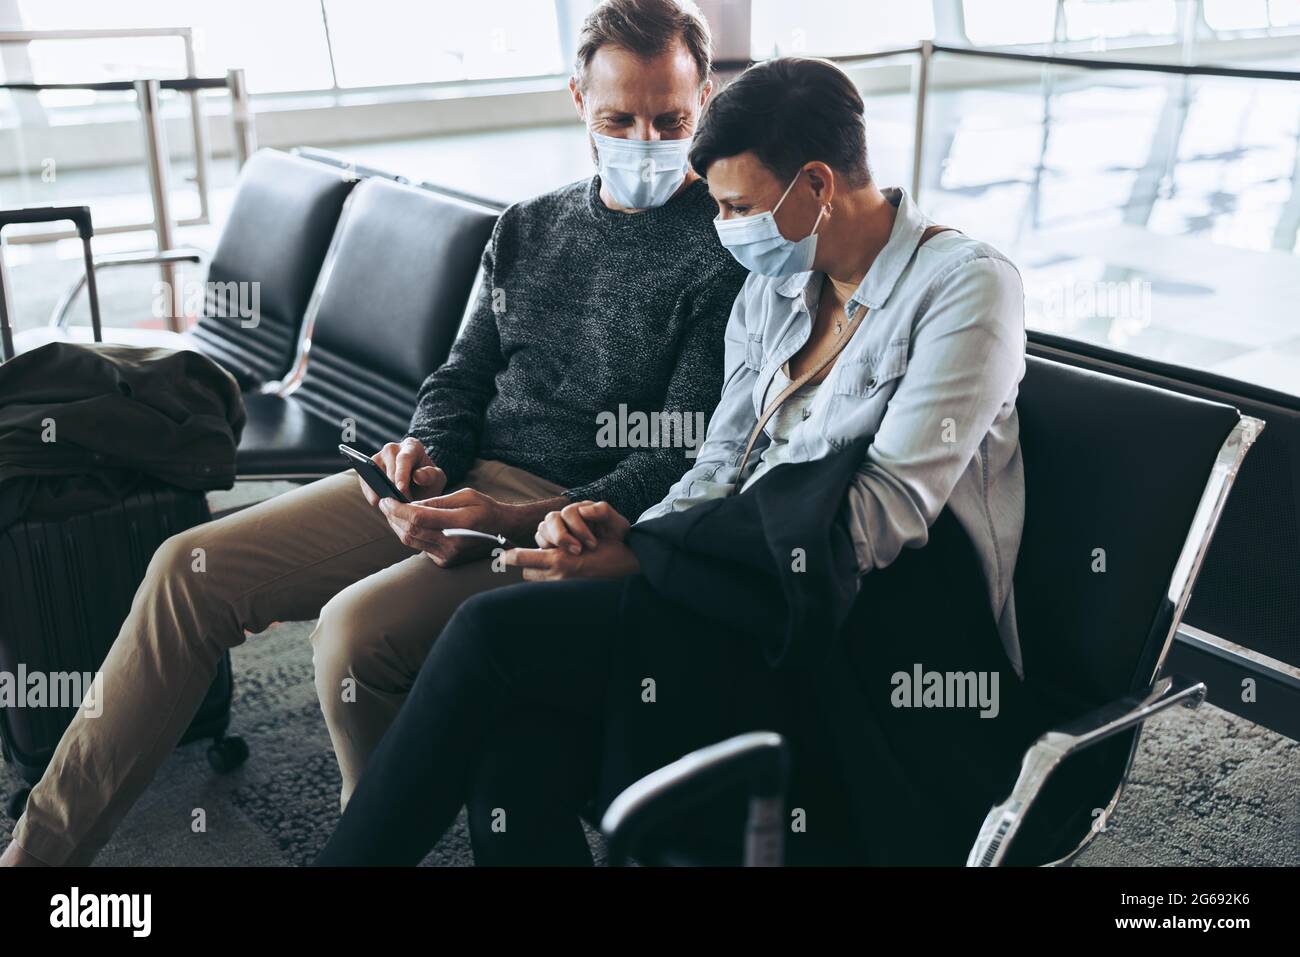 Paar mit Gesichtsmasken sitzen am Flughafen und mit dem Handy, um Fluginformationen zu überprüfen. Mann zeigt der Frau sein Handy, während er auf Sendung wartet Stockfoto